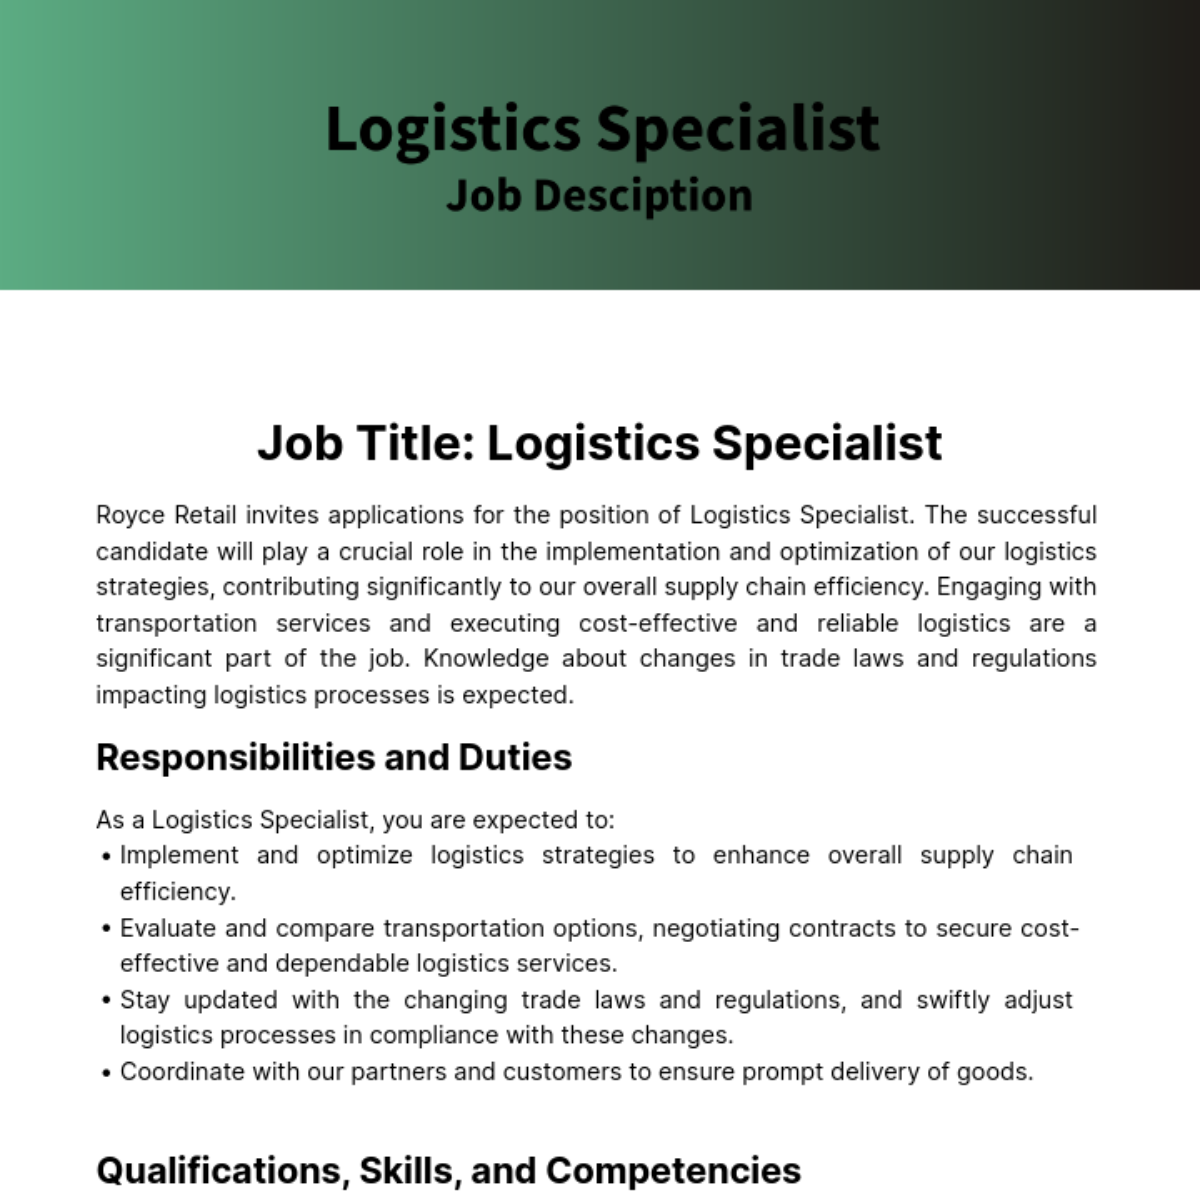 Logistics Specialist Job Description Template